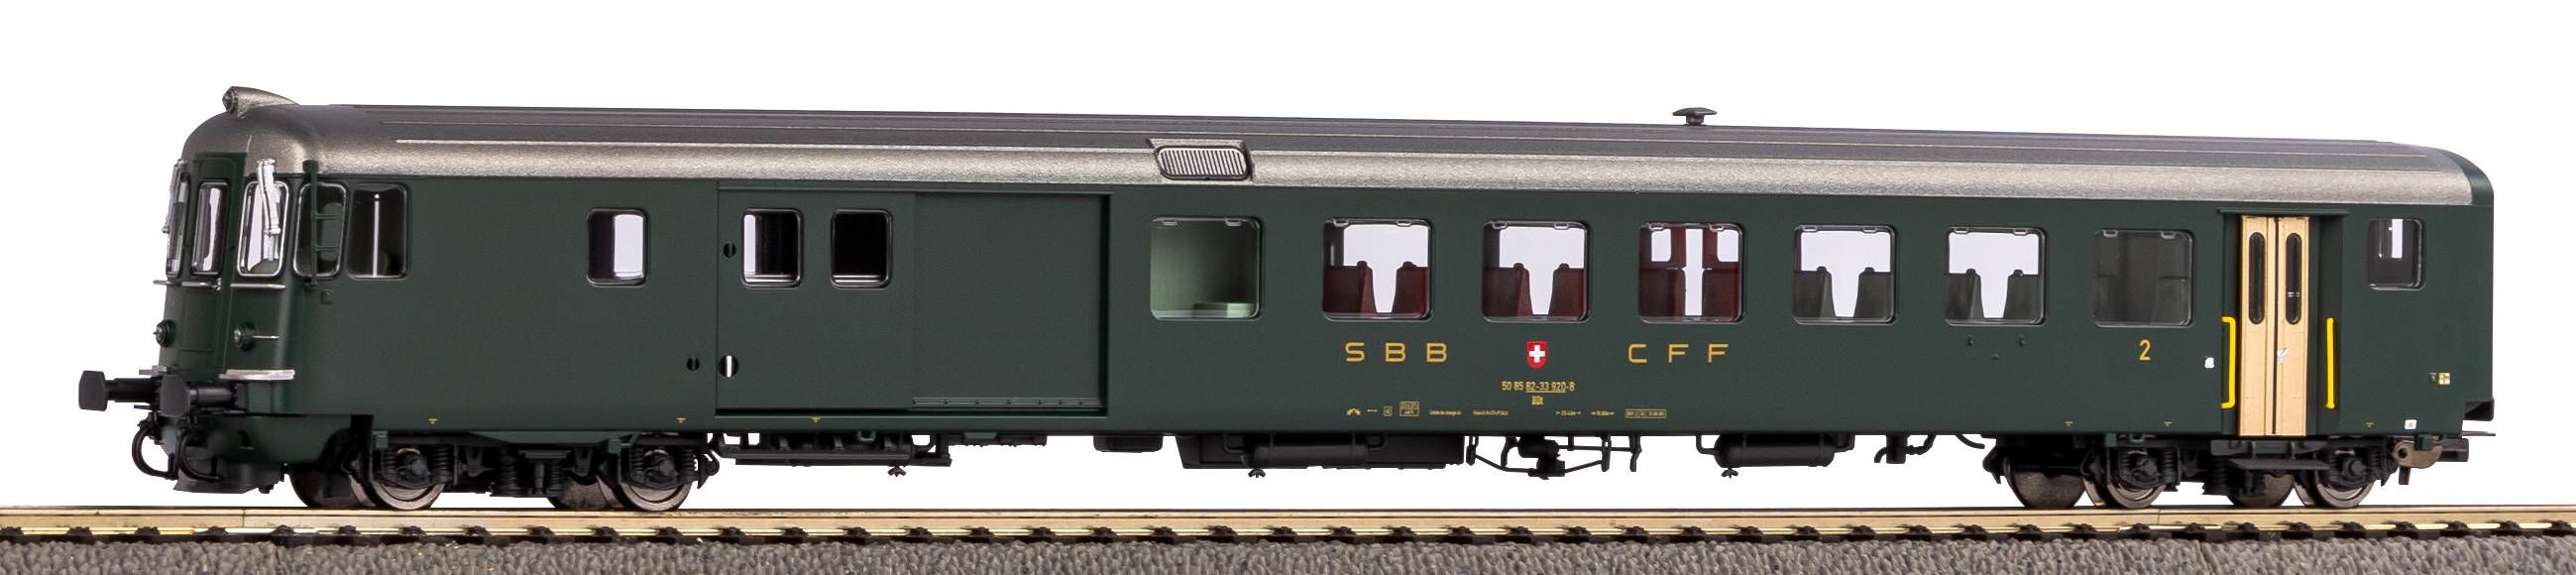 Piko H0 96752, SBB Steuerwagen BDt 914-1 EW II grün mit alter Schrift, DC